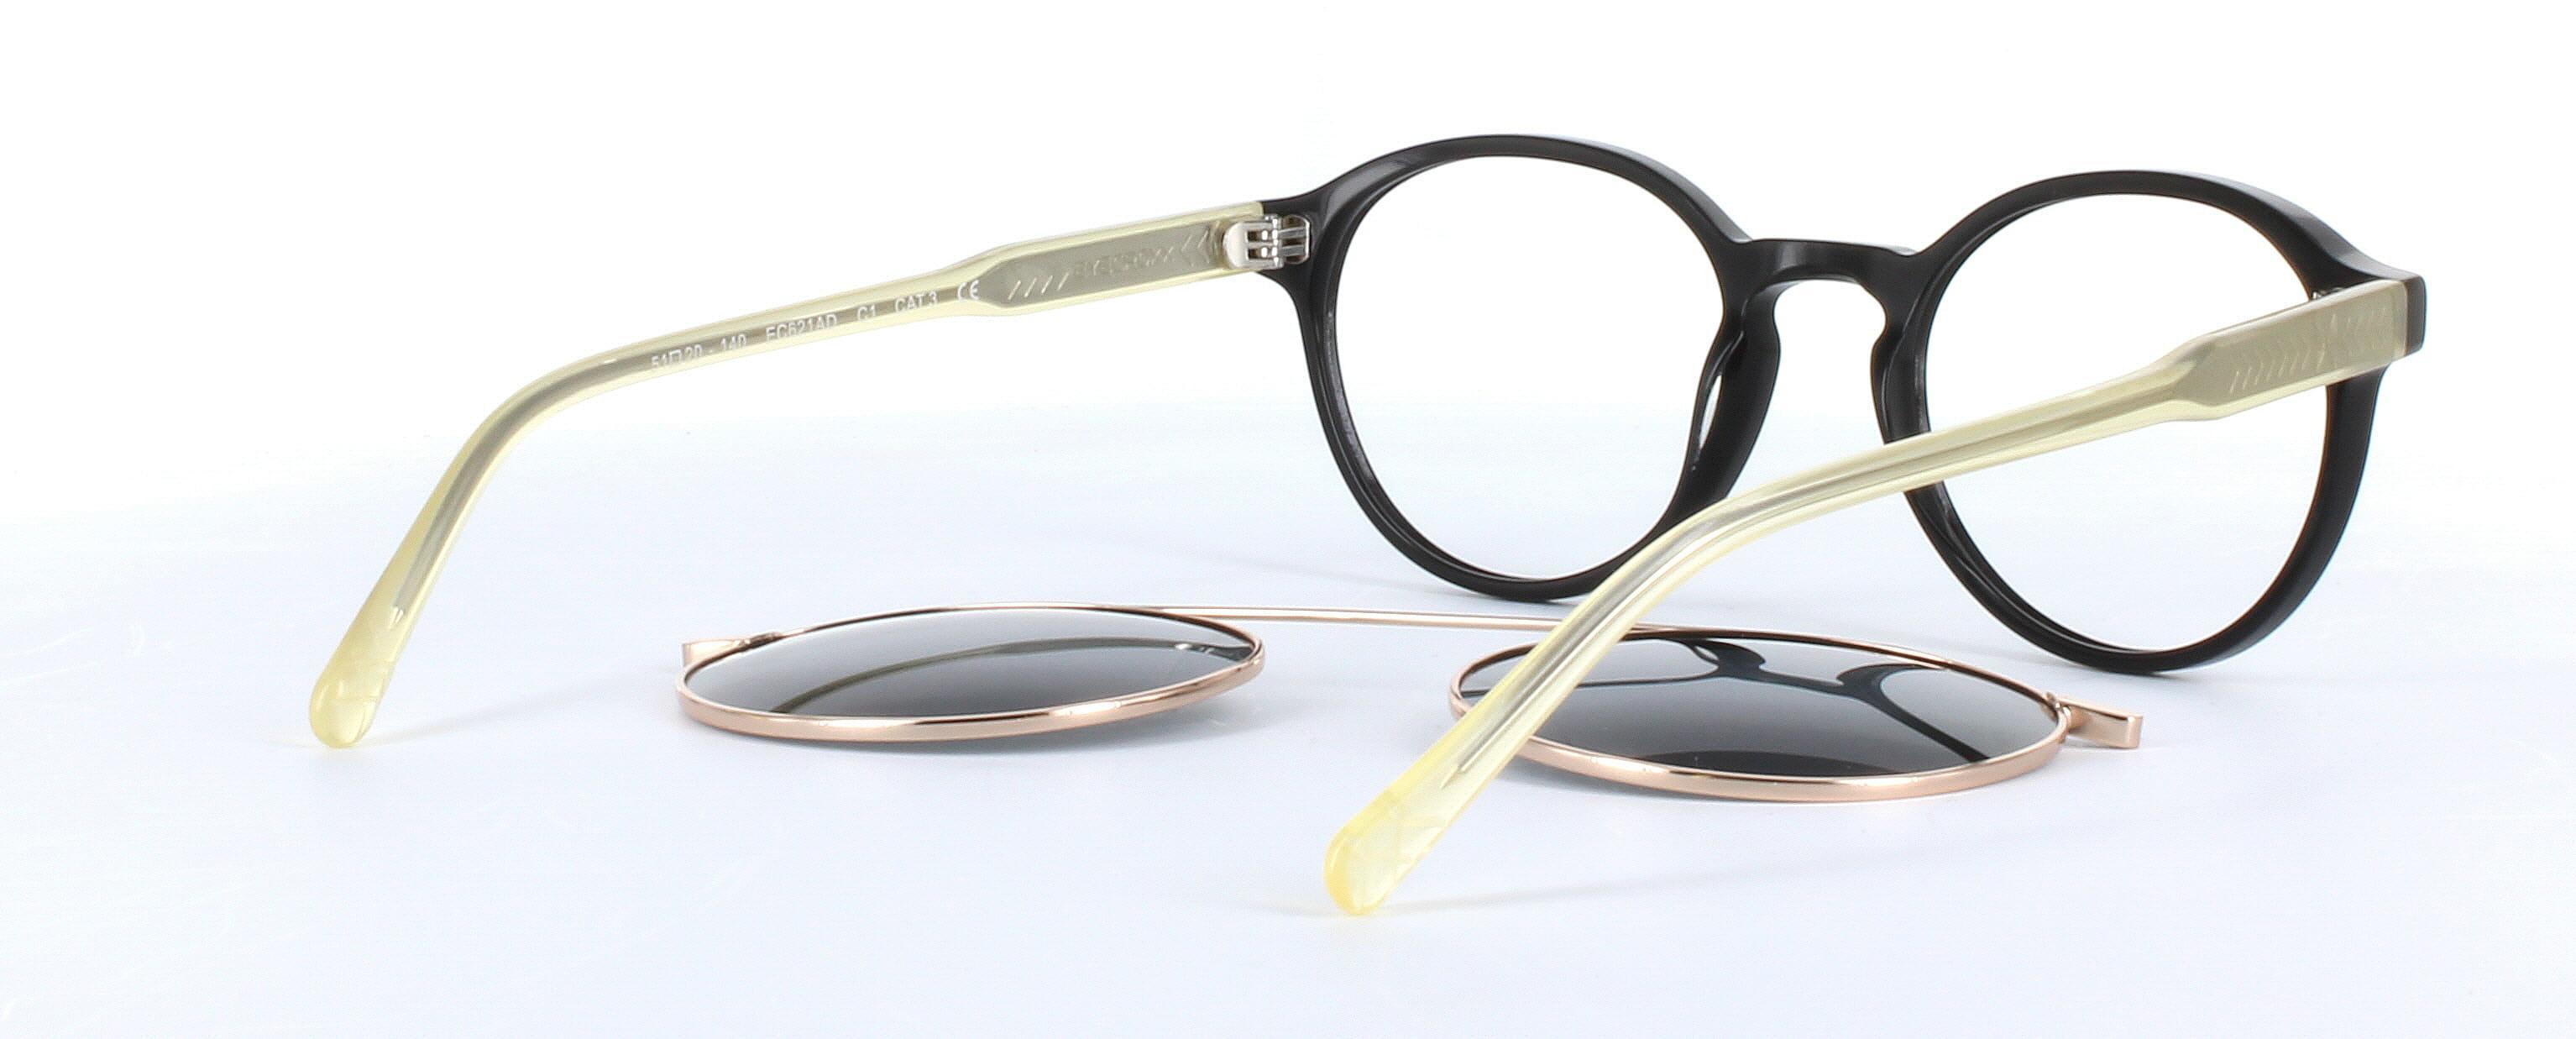 Eyecroxx 621-C1 Black Full Rim Round Acetate Glasses - Image View 4